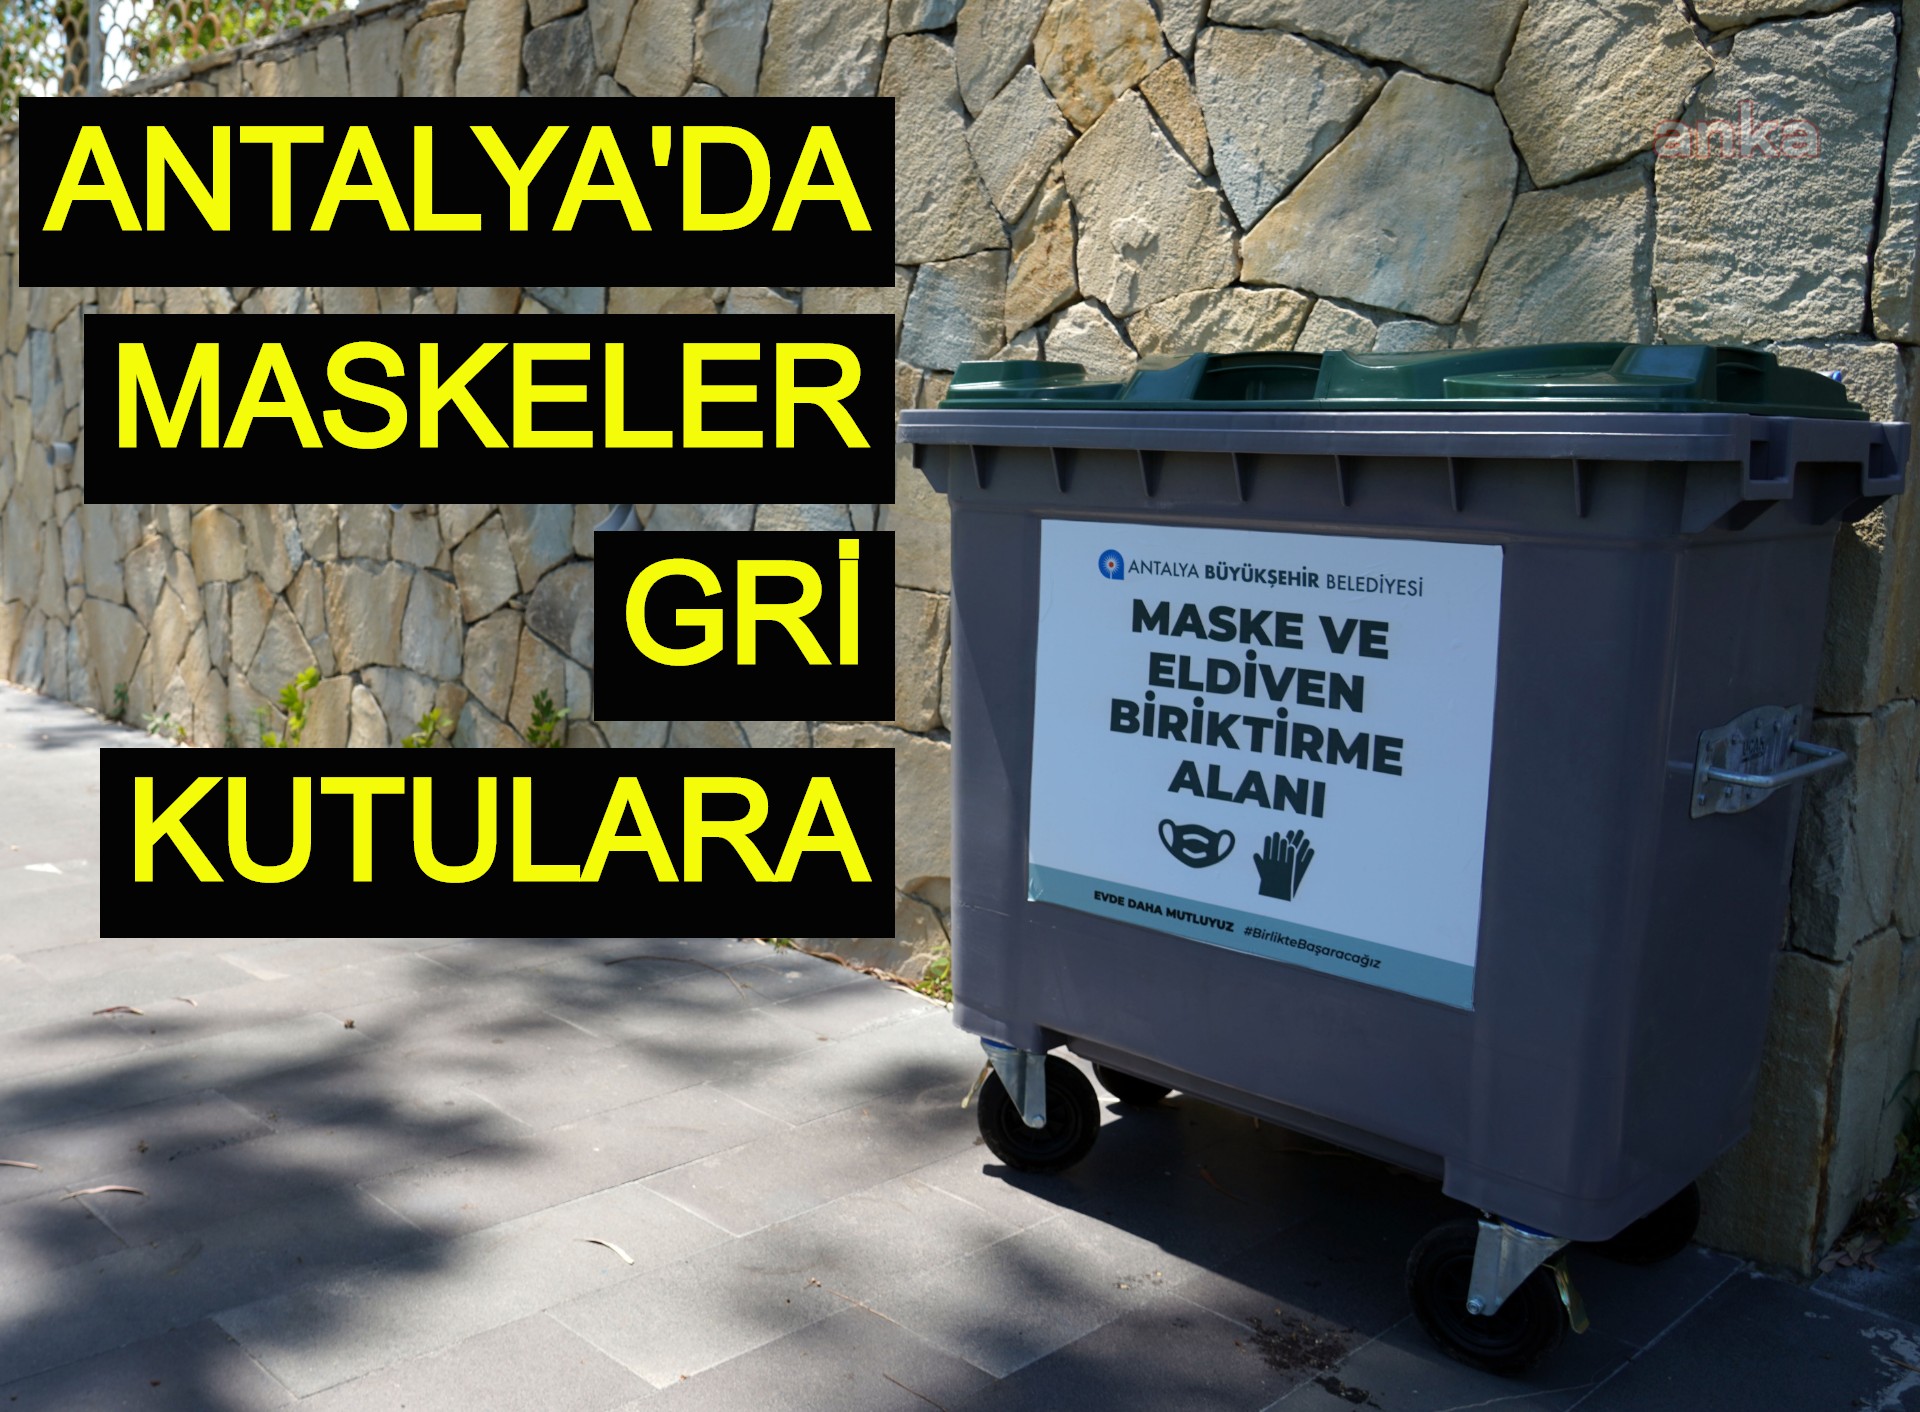 Antalya'da maskeler gri kutulara